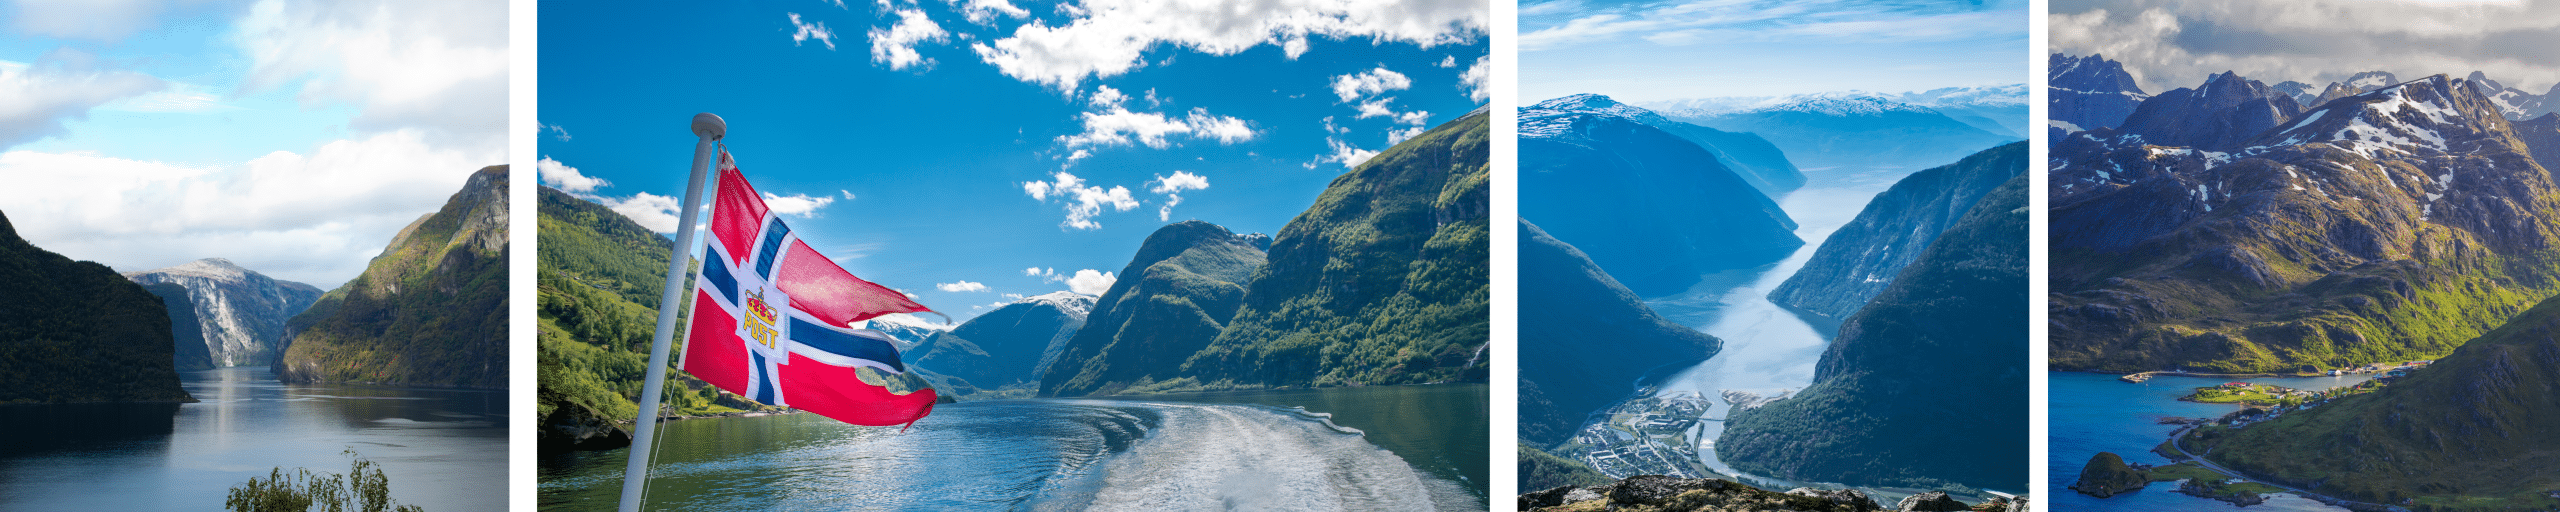 Op cruise naar de Noorse Fjorden in Noorwegen - een mooi stuk natuur